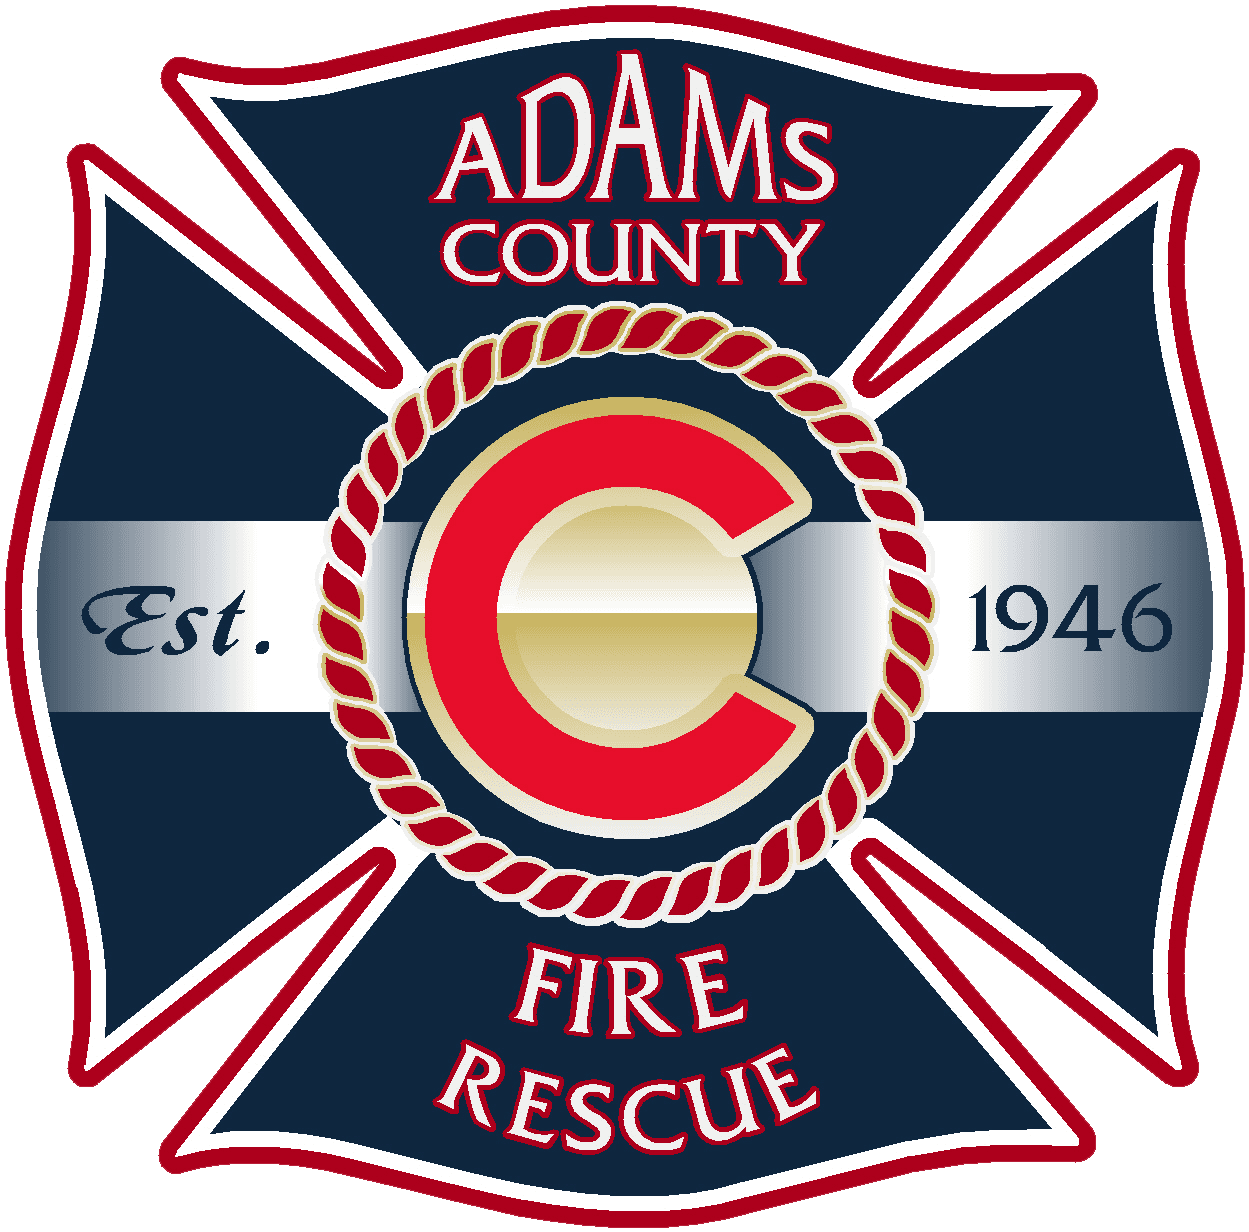 Adams County Fire Rescue